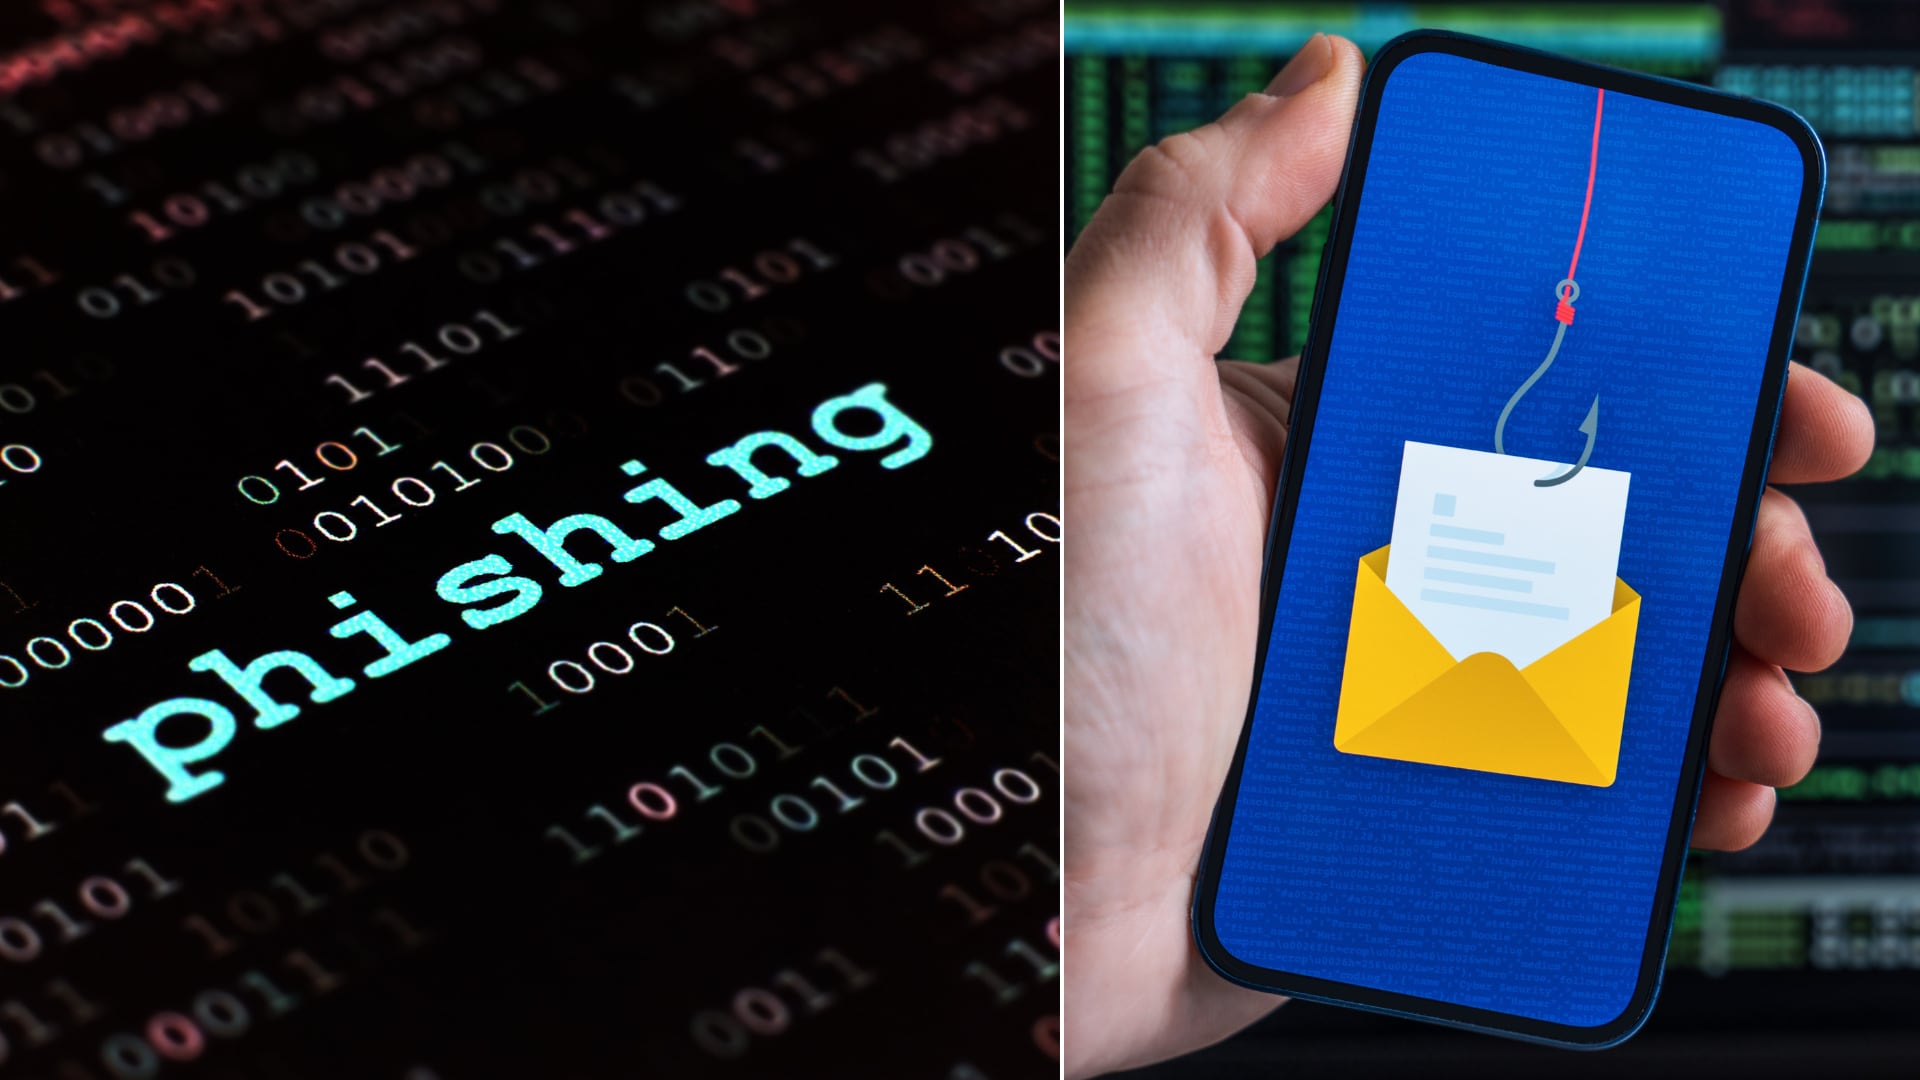 El 'phishing' de clonación engaña a los usuarios replicando correos legítimos para robar información. Siga estos consejos para evitar caer en la estafa.